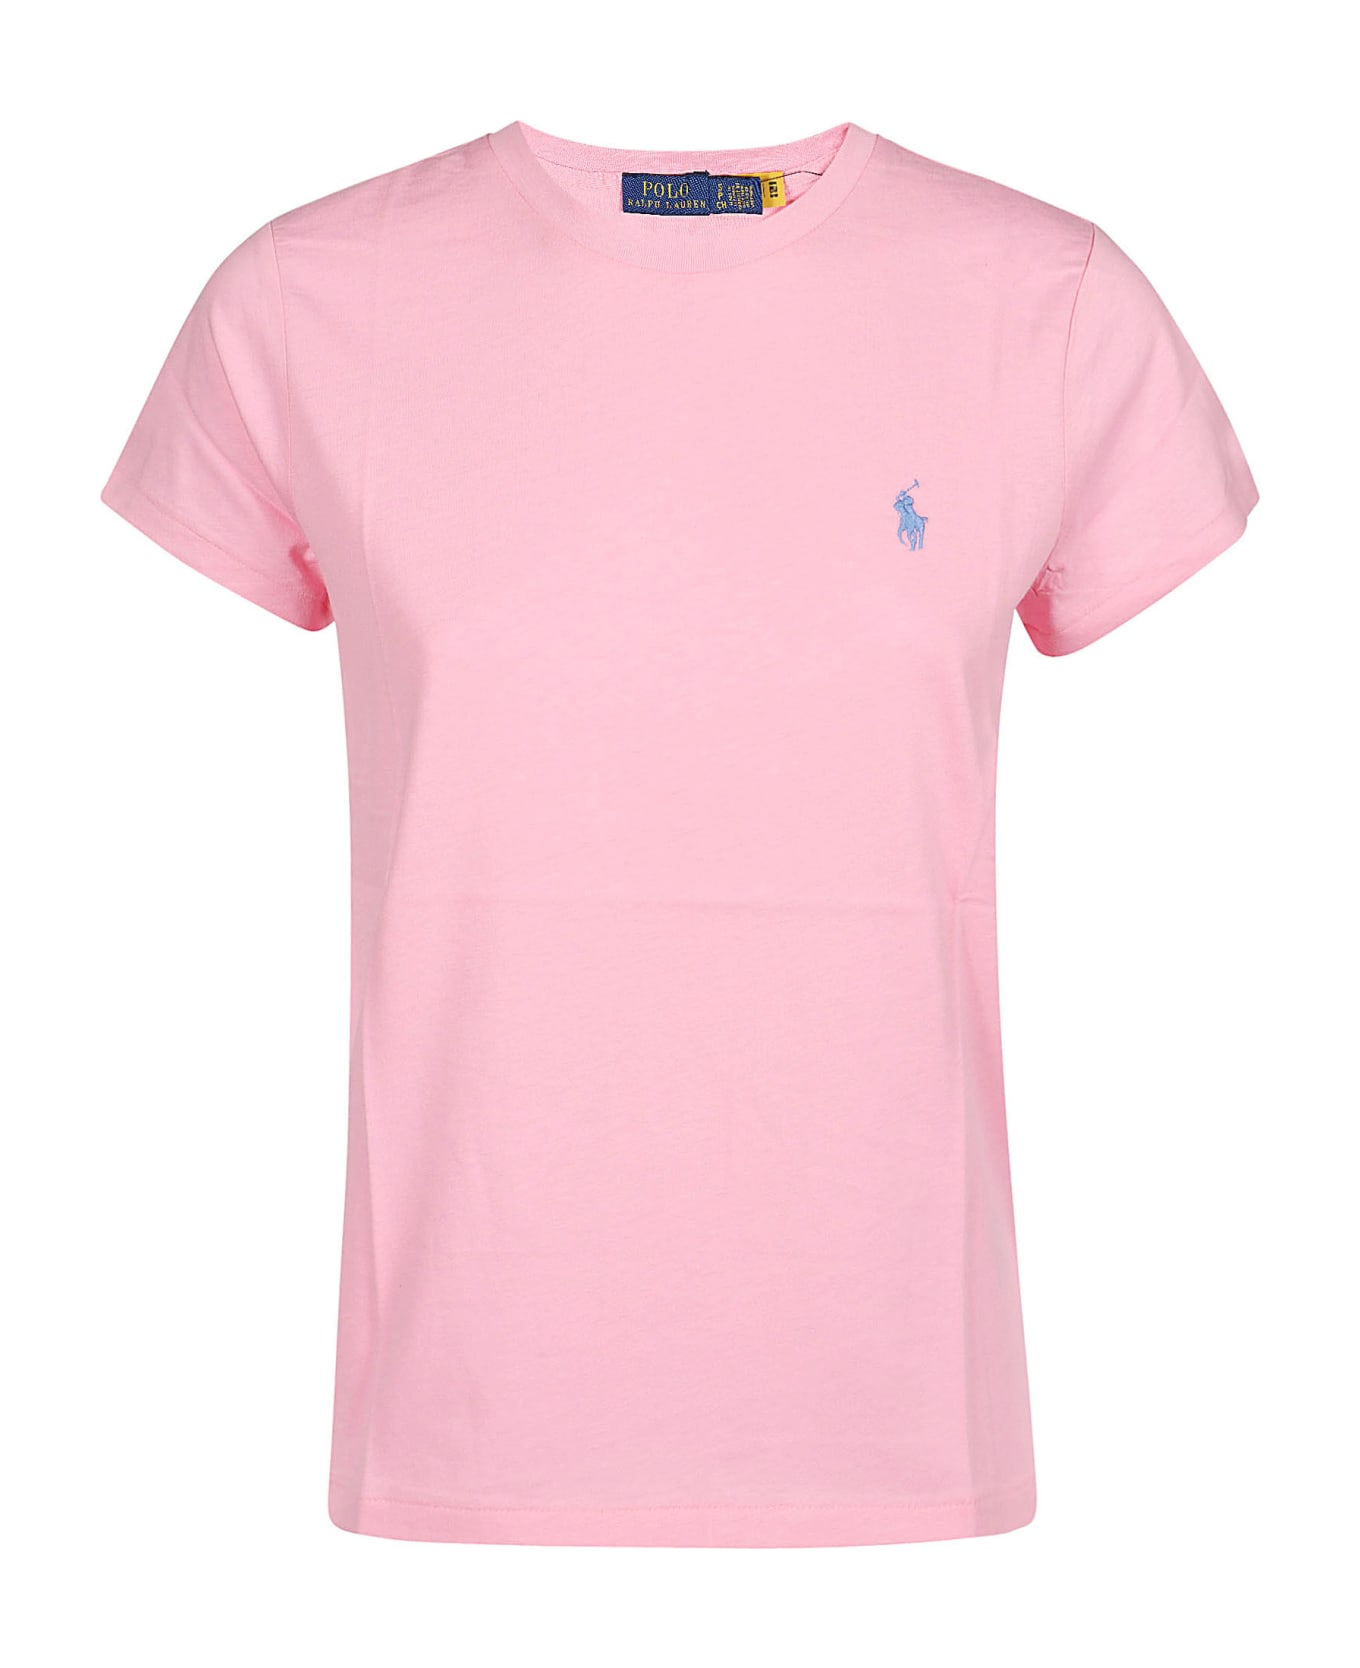 Polo Ralph Lauren New T-shirt - Course Pink